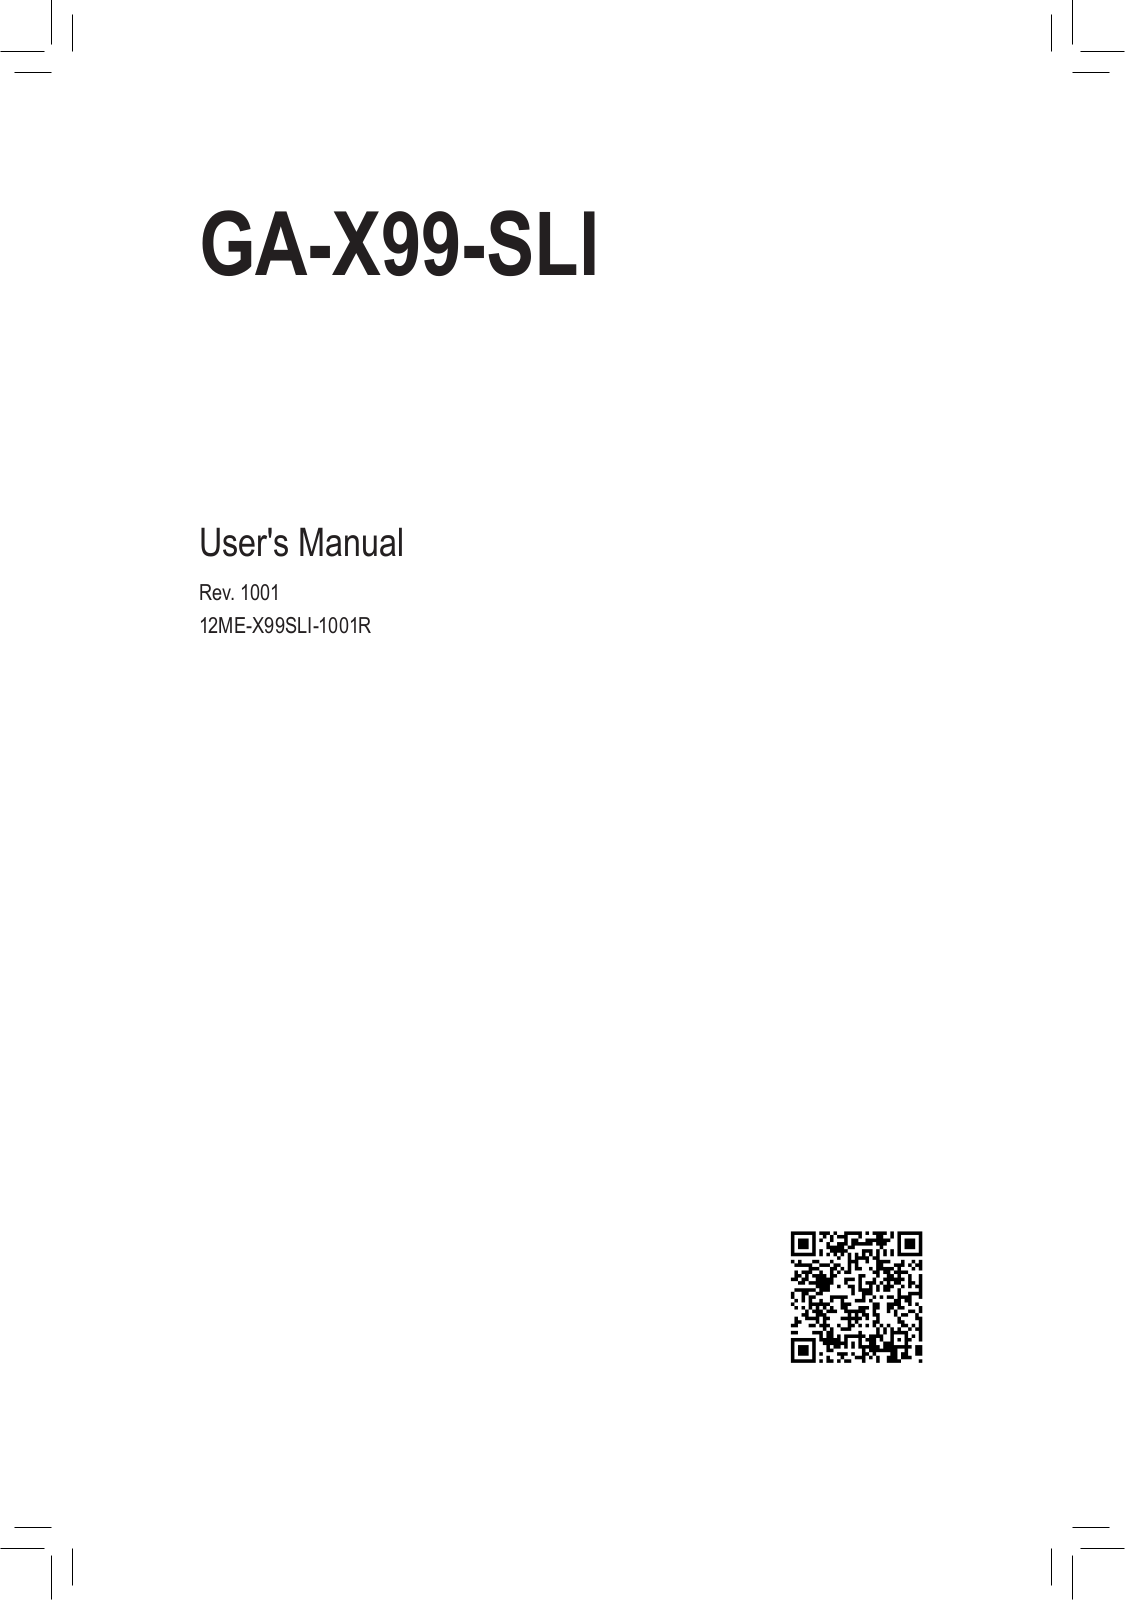 Gigabyte GA-X99-SLI User Manual